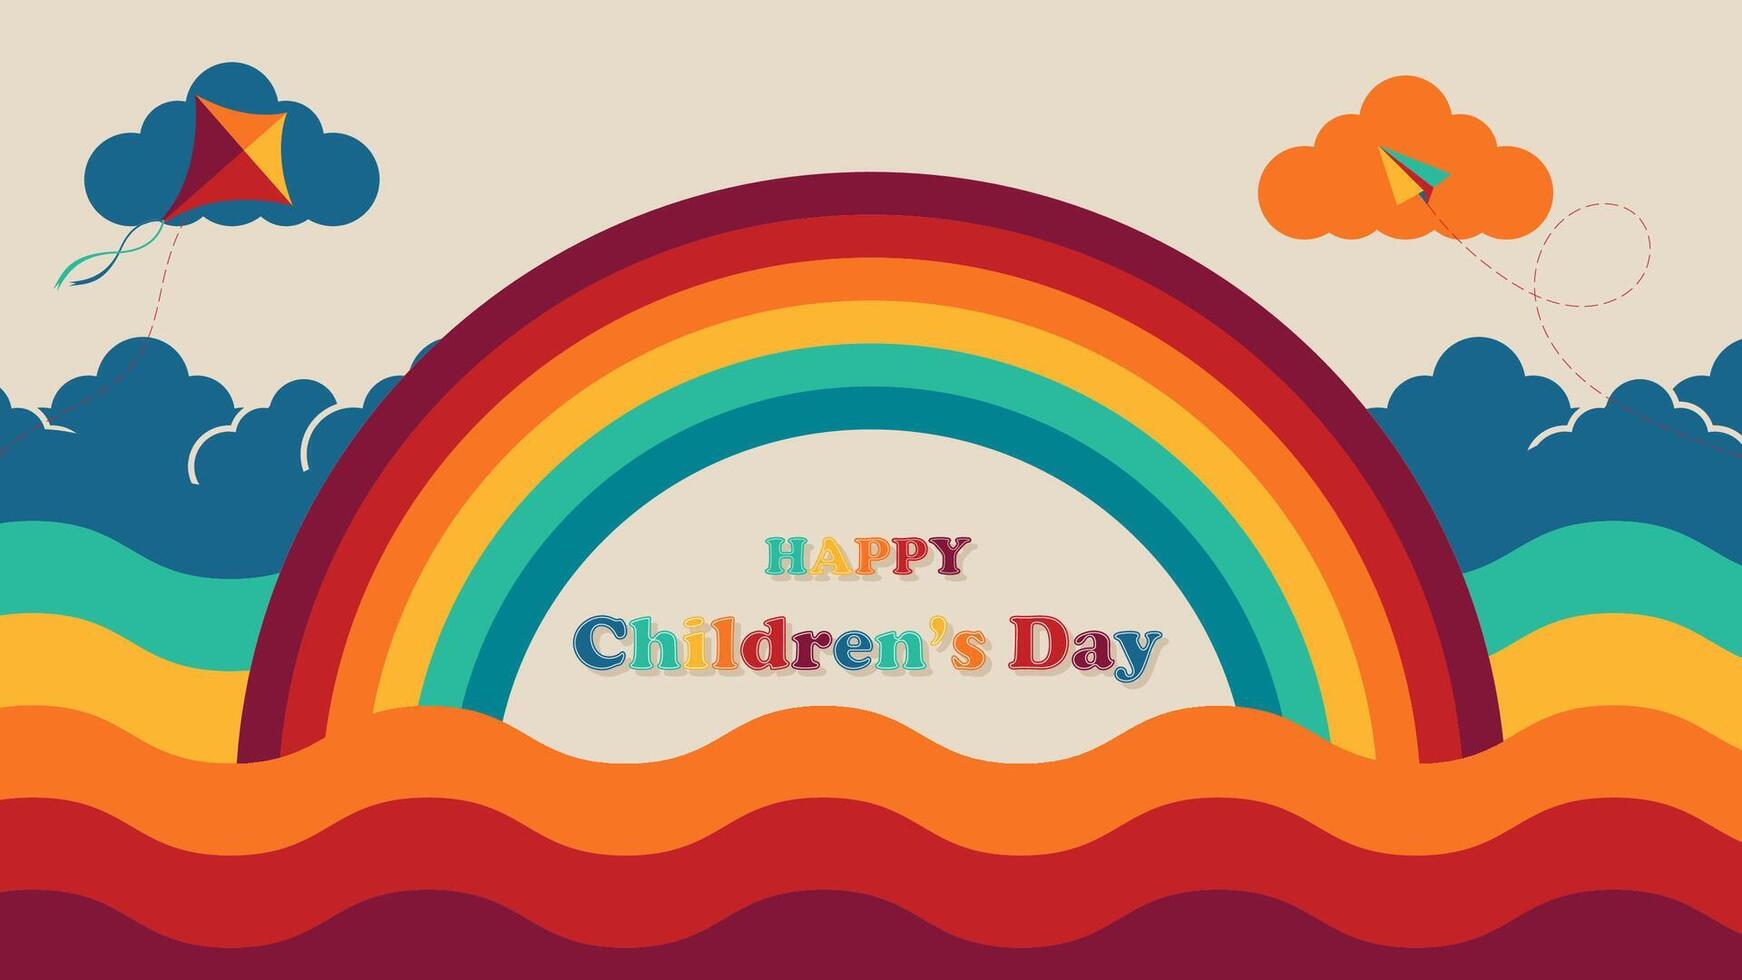 gelukkig kinderen dag achtergrond met regenboog vormig kader, illustratie vector